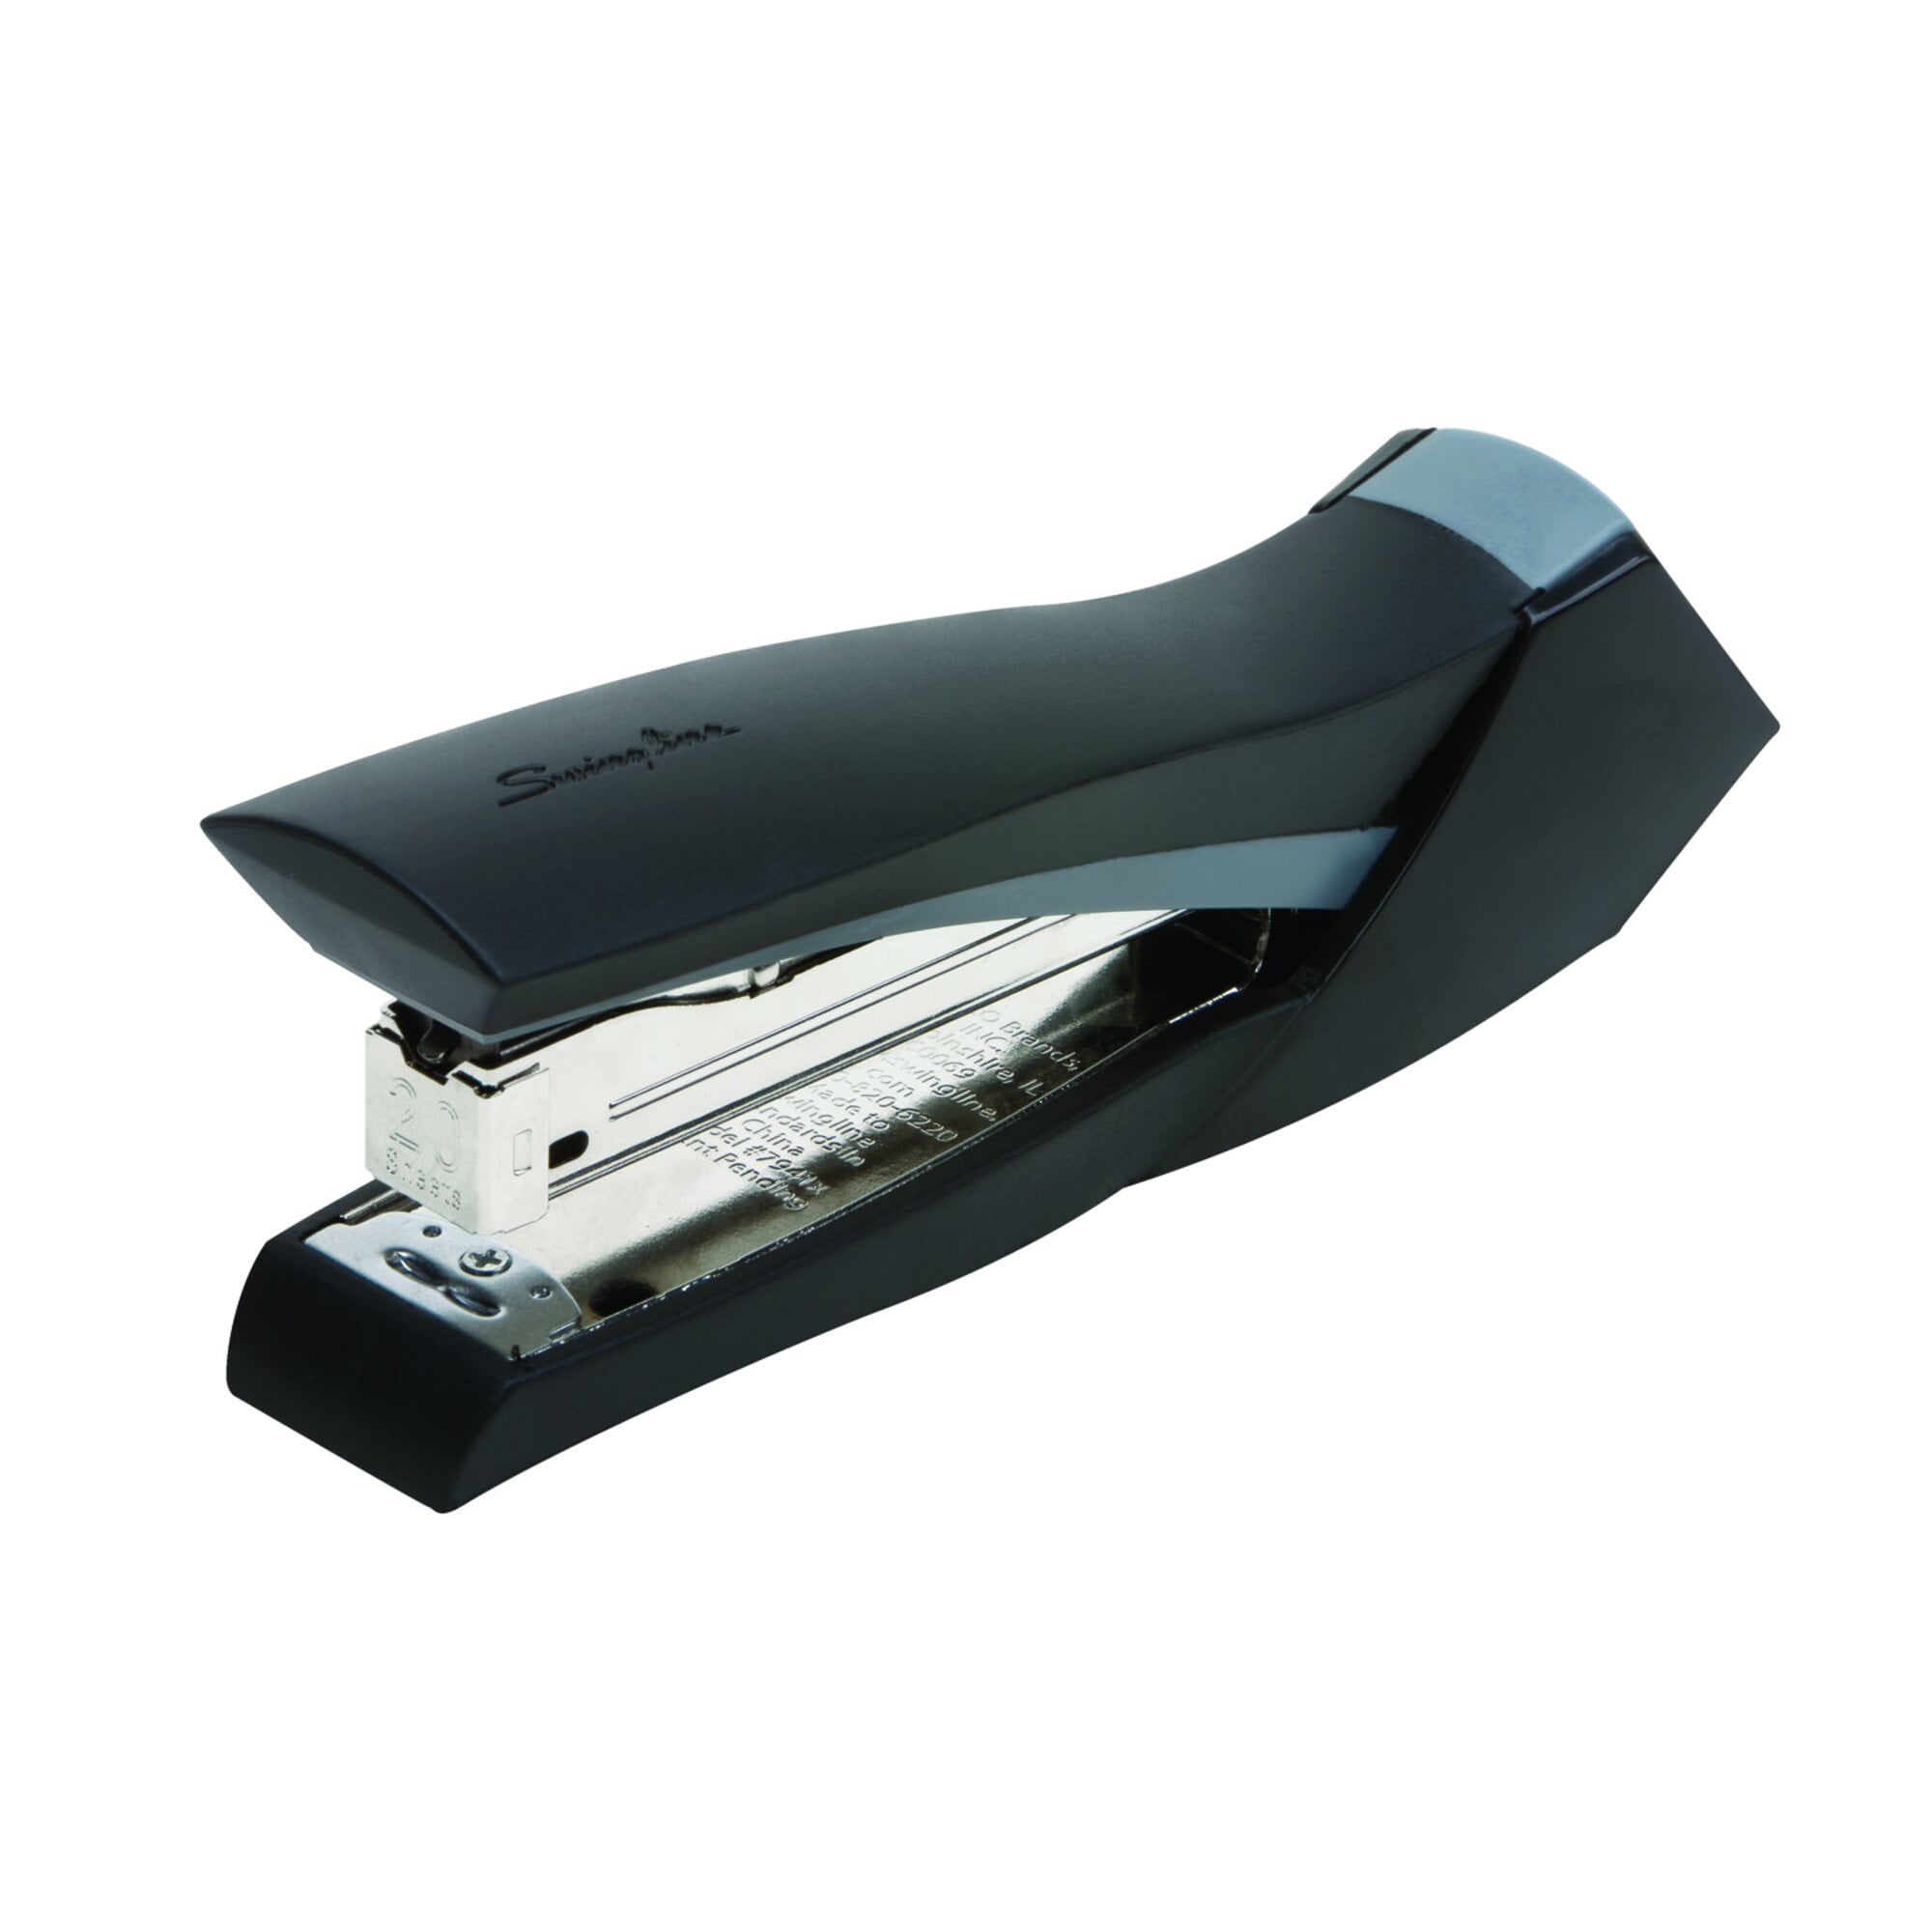 Back-to-School/Office Supplies: Swingline's best-selling stapler